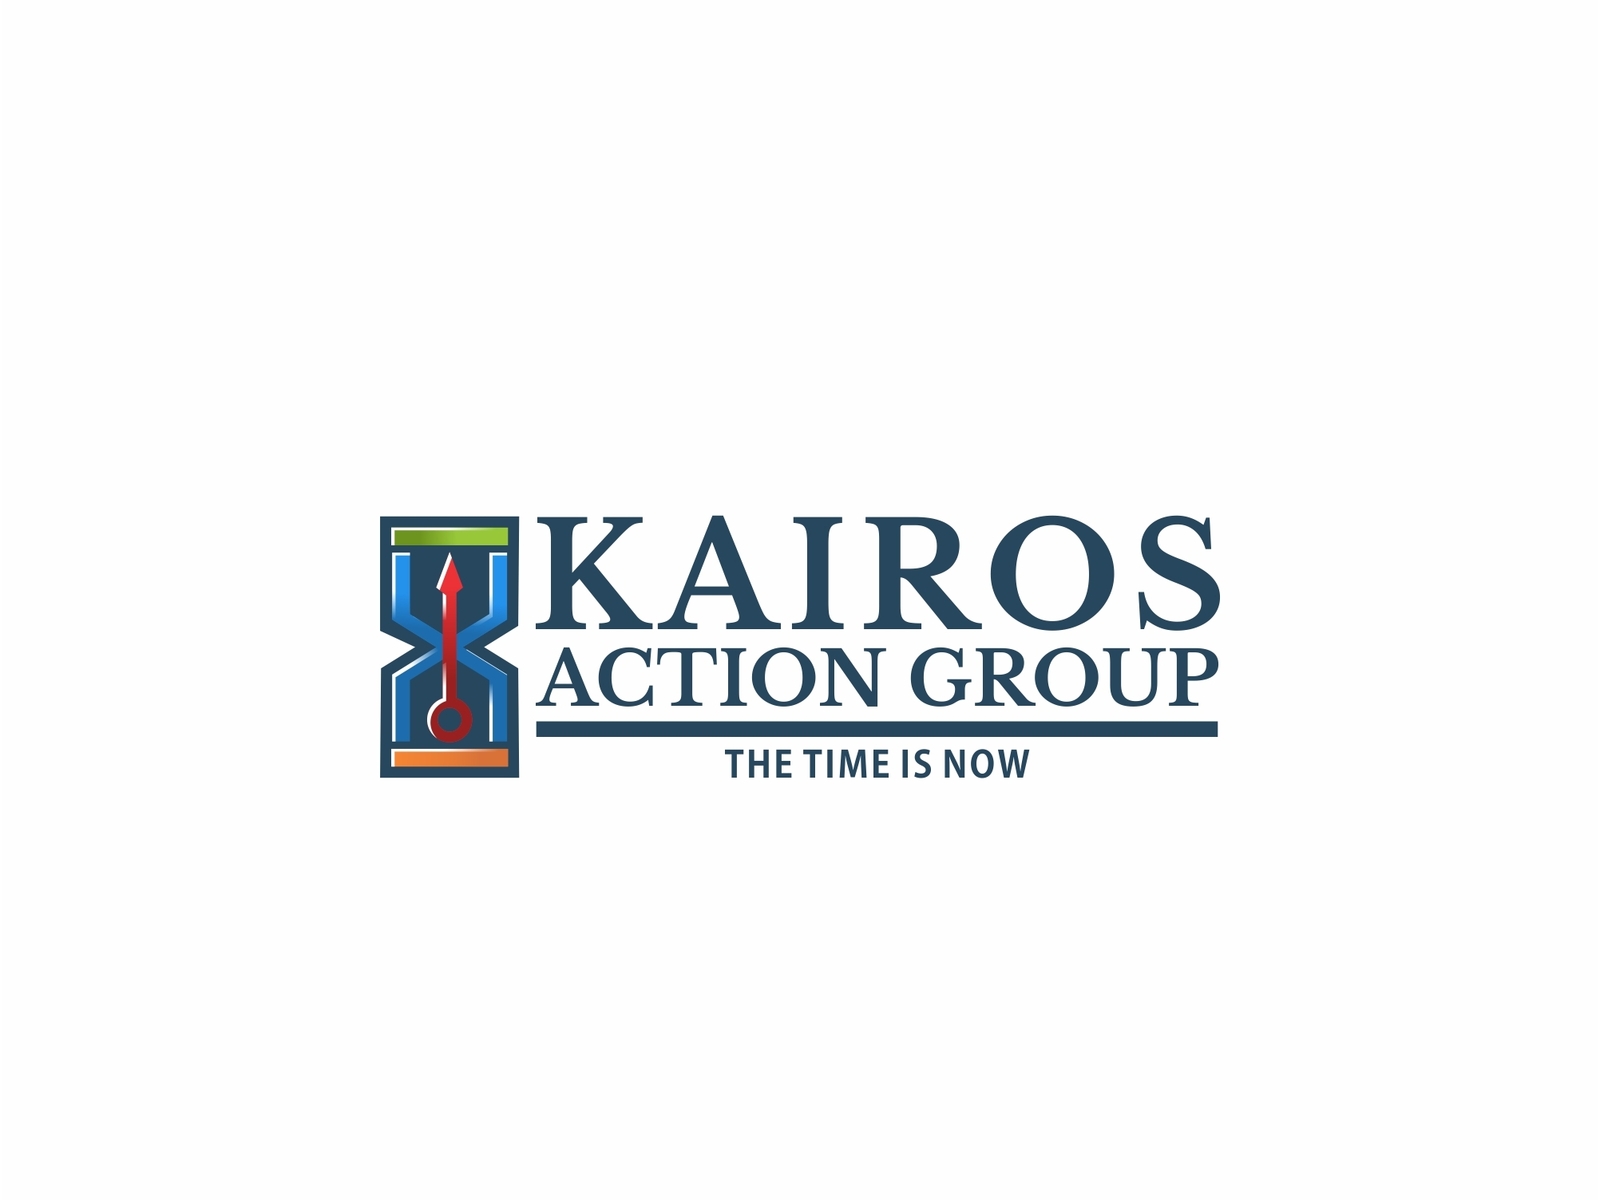 KAIROS Action Group